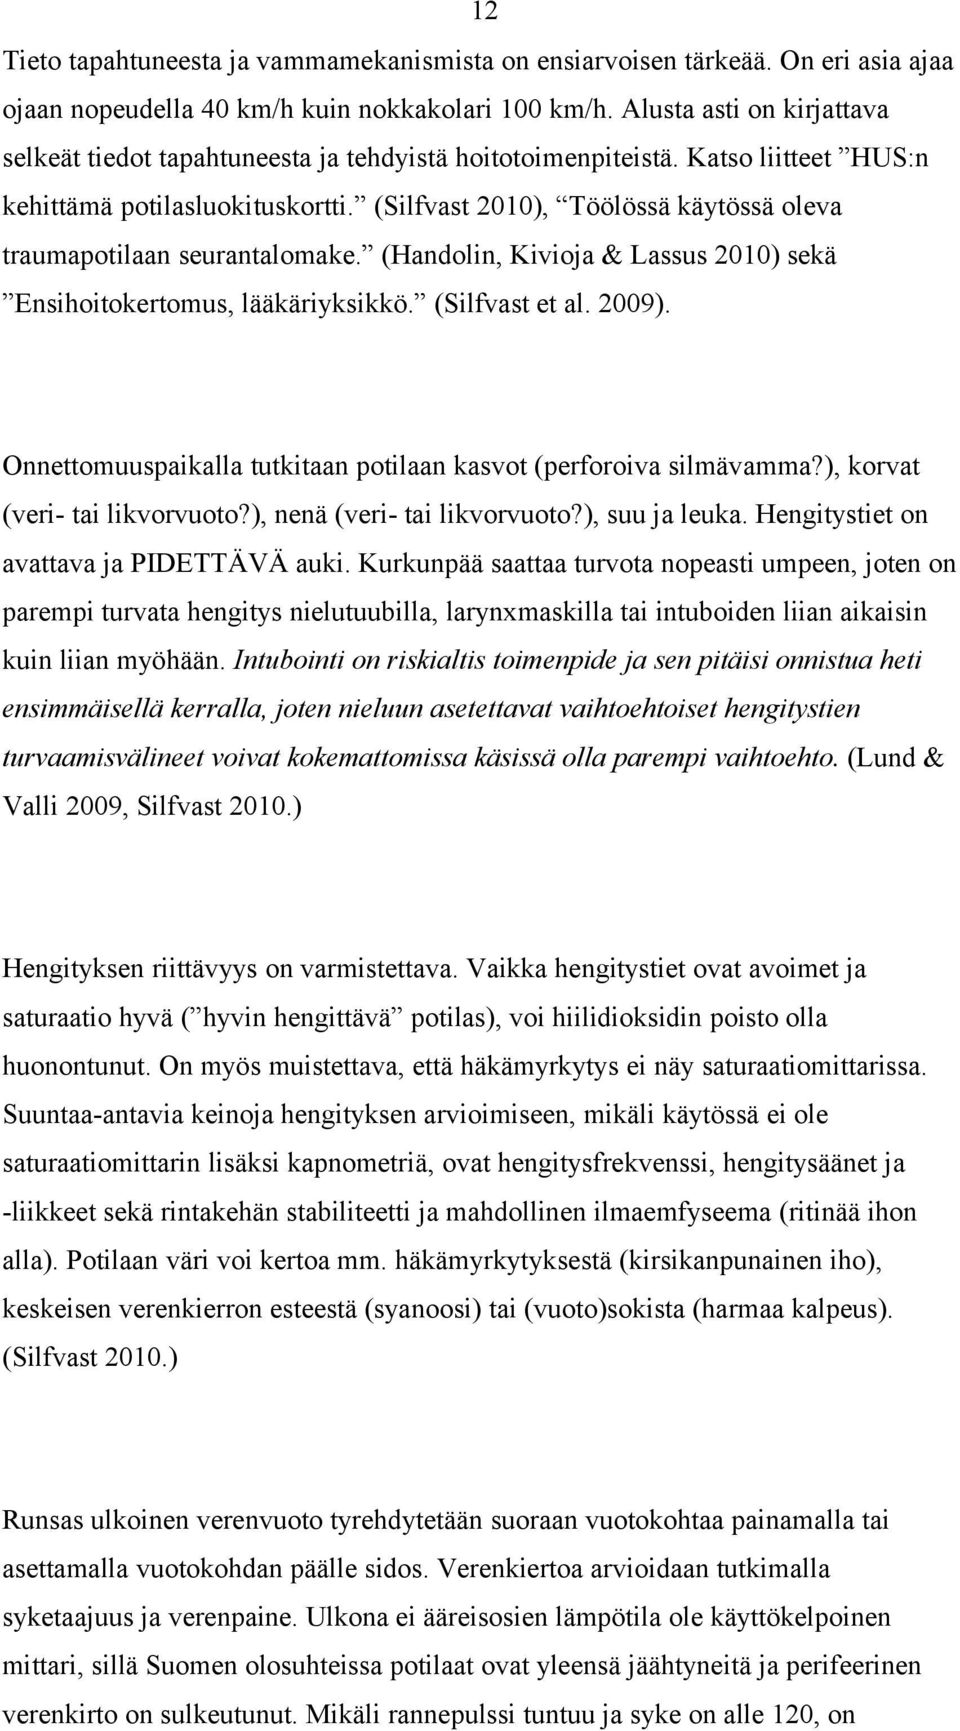 (Silfvast 2010), Töölössä käytössä oleva traumapotilaan seurantalomake. (Handolin, Kivioja & Lassus 2010) sekä Ensihoitokertomus, lääkäriyksikkö. (Silfvast et al. 2009).